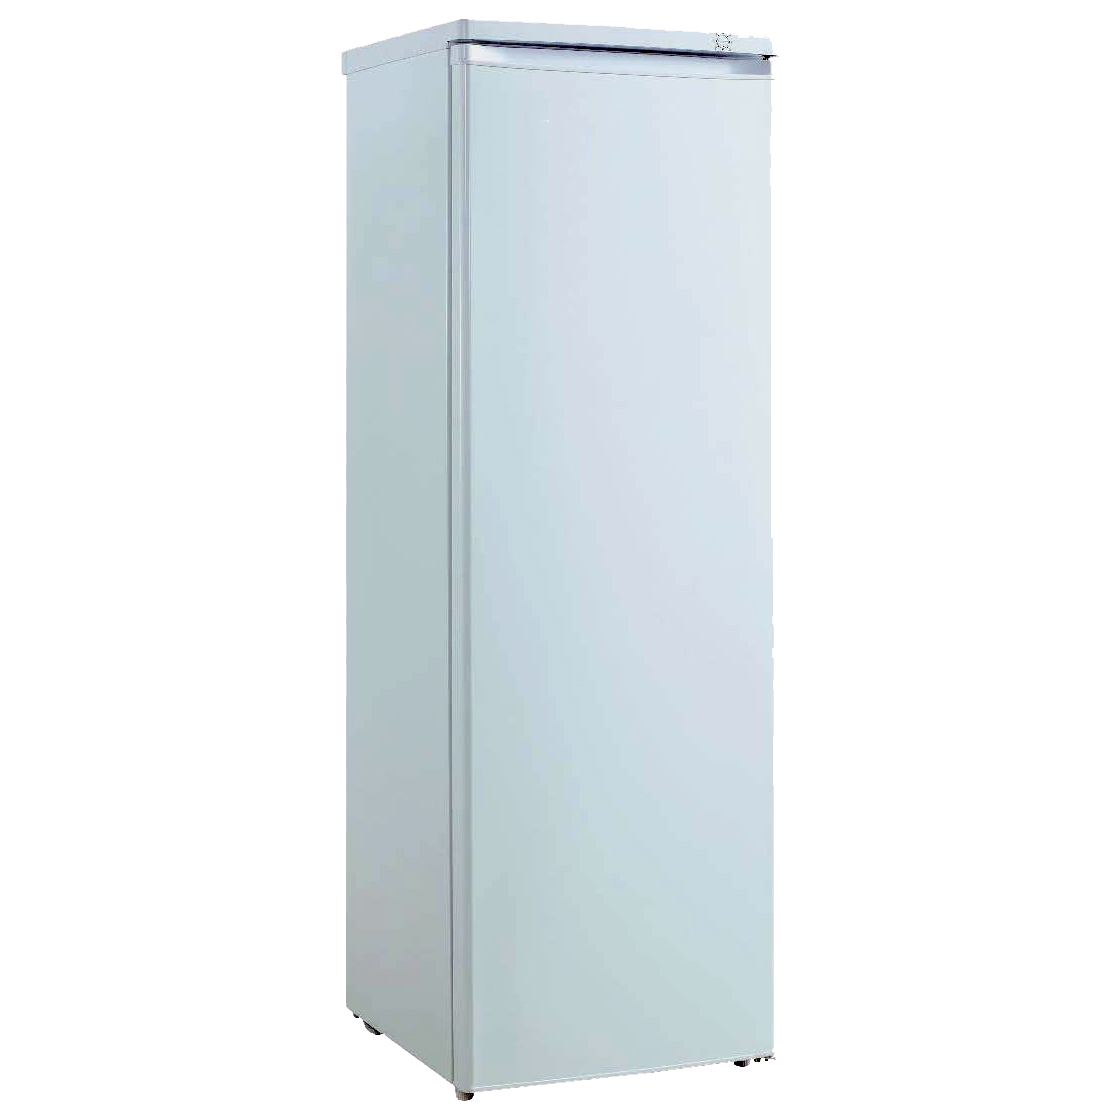 縦型7段冷凍庫（-20℃以下）/M2305VT-F200TK